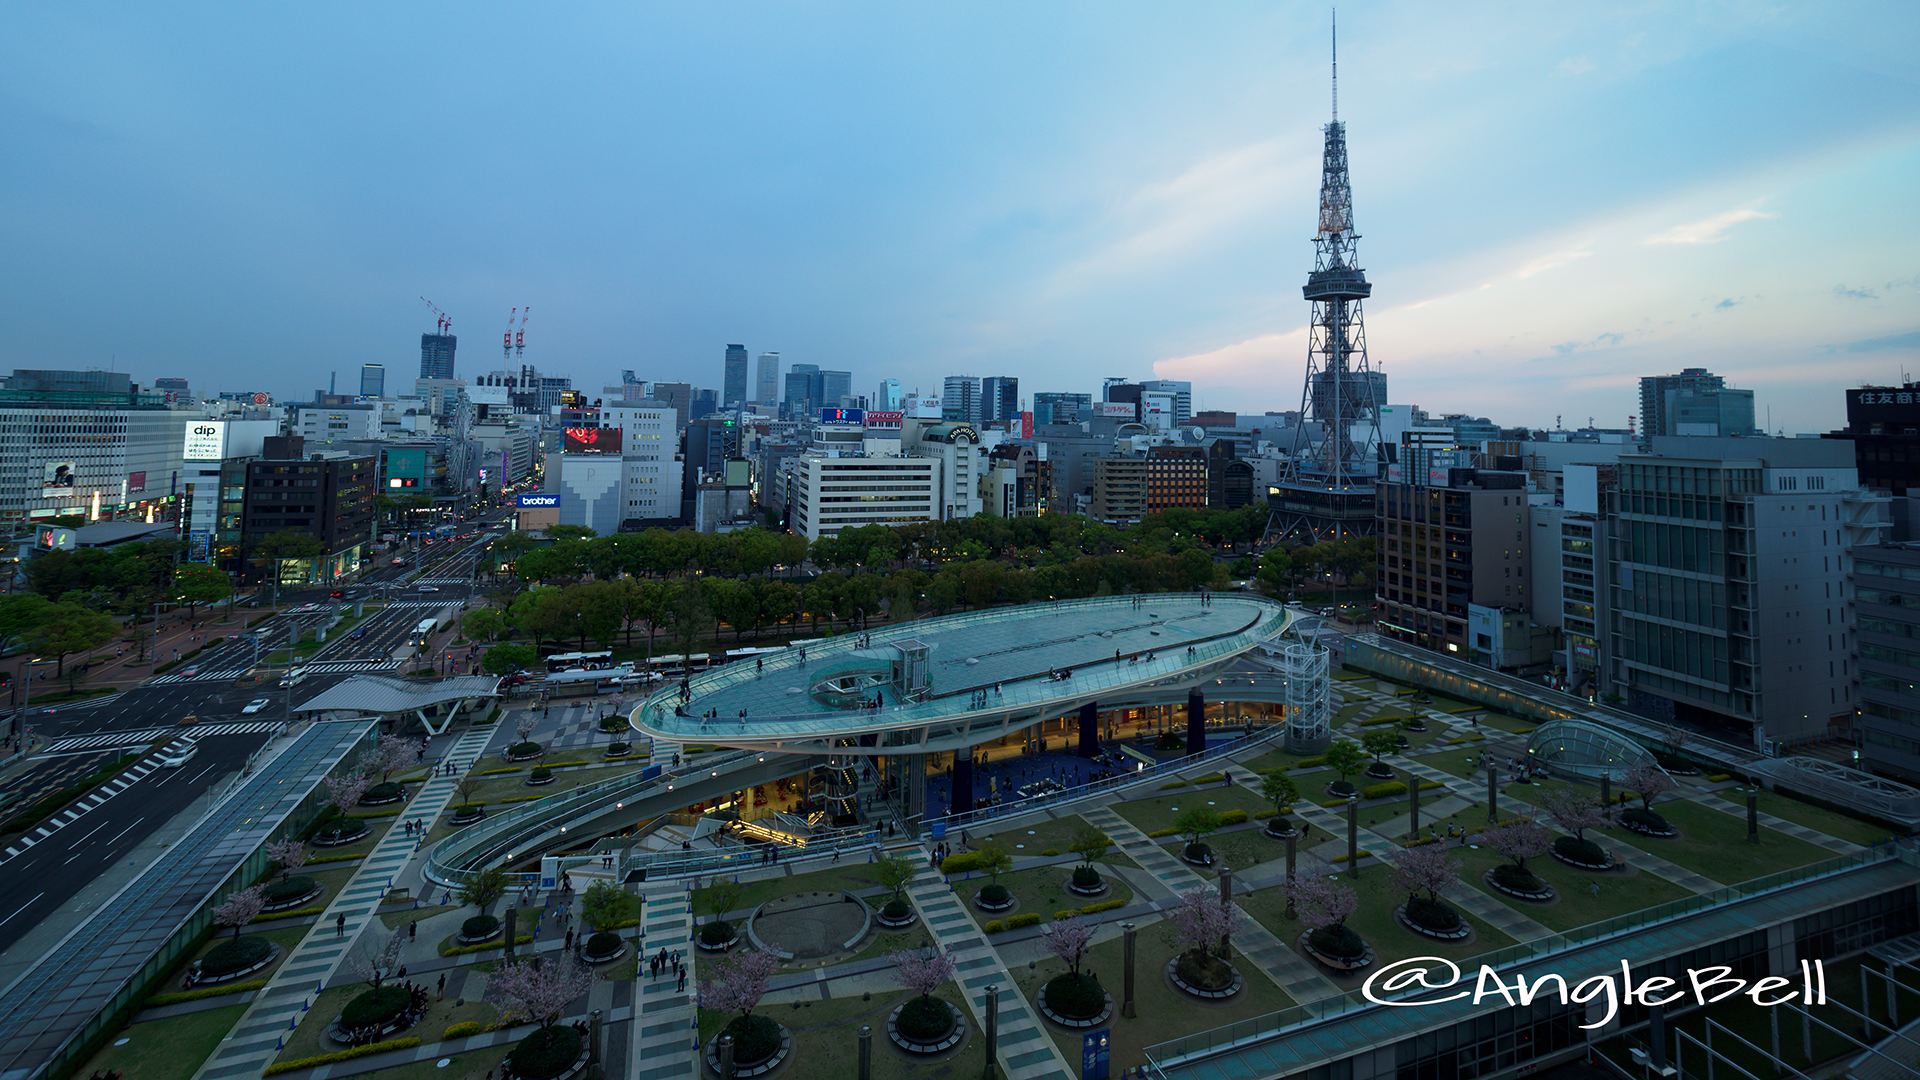 愛知芸術文化センター 11F展望回廊から見る名古屋市景観